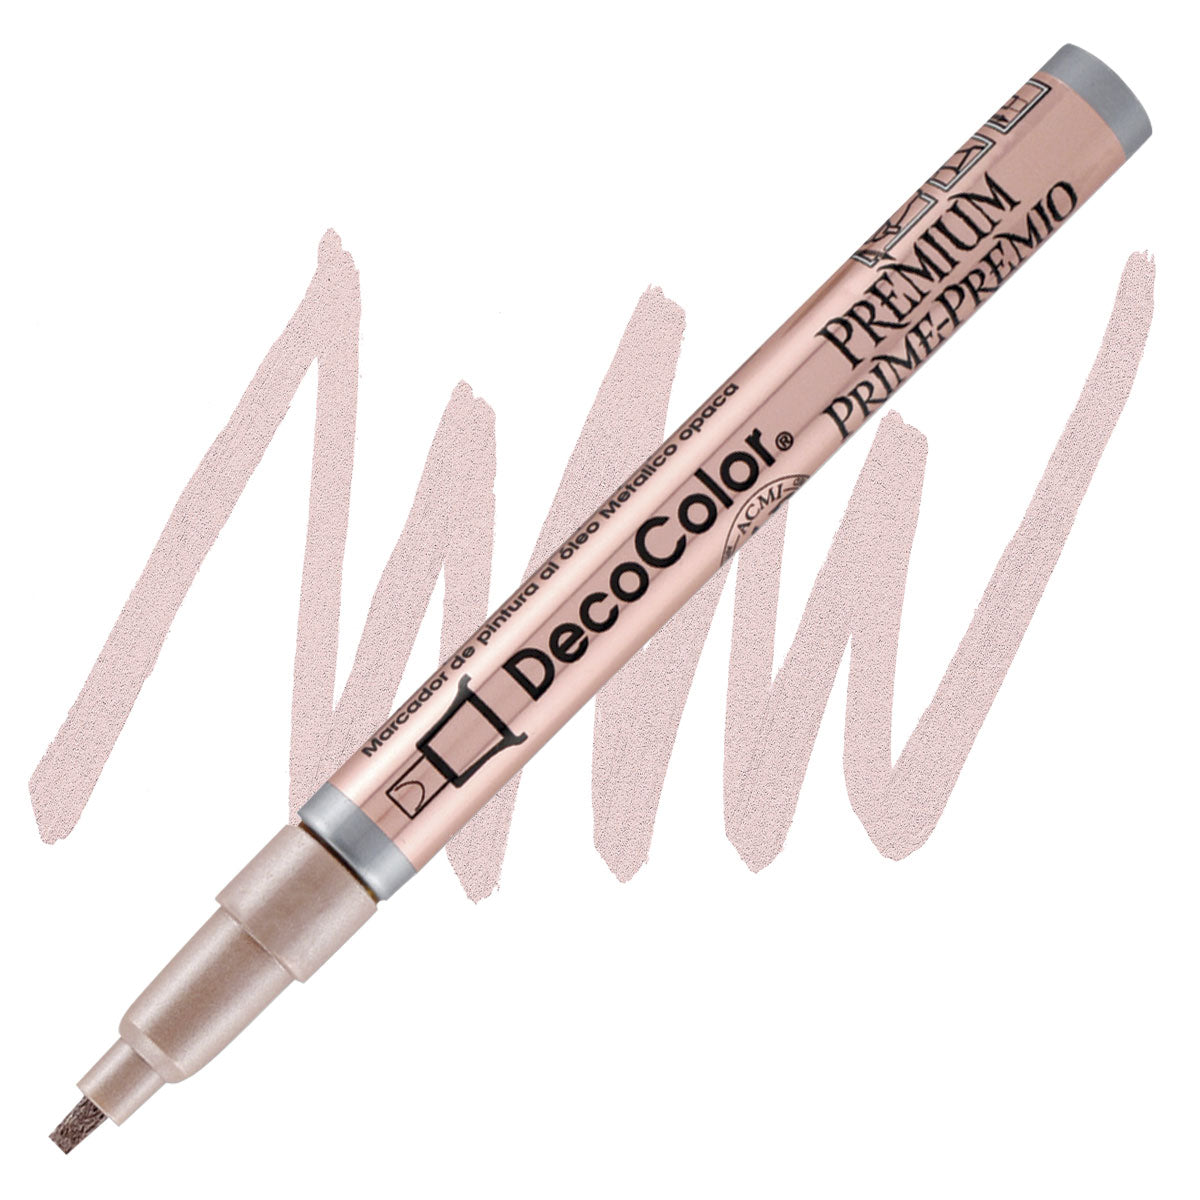 Decocolor Premium Paint Marker, 2mm Leafing/Flat Tip